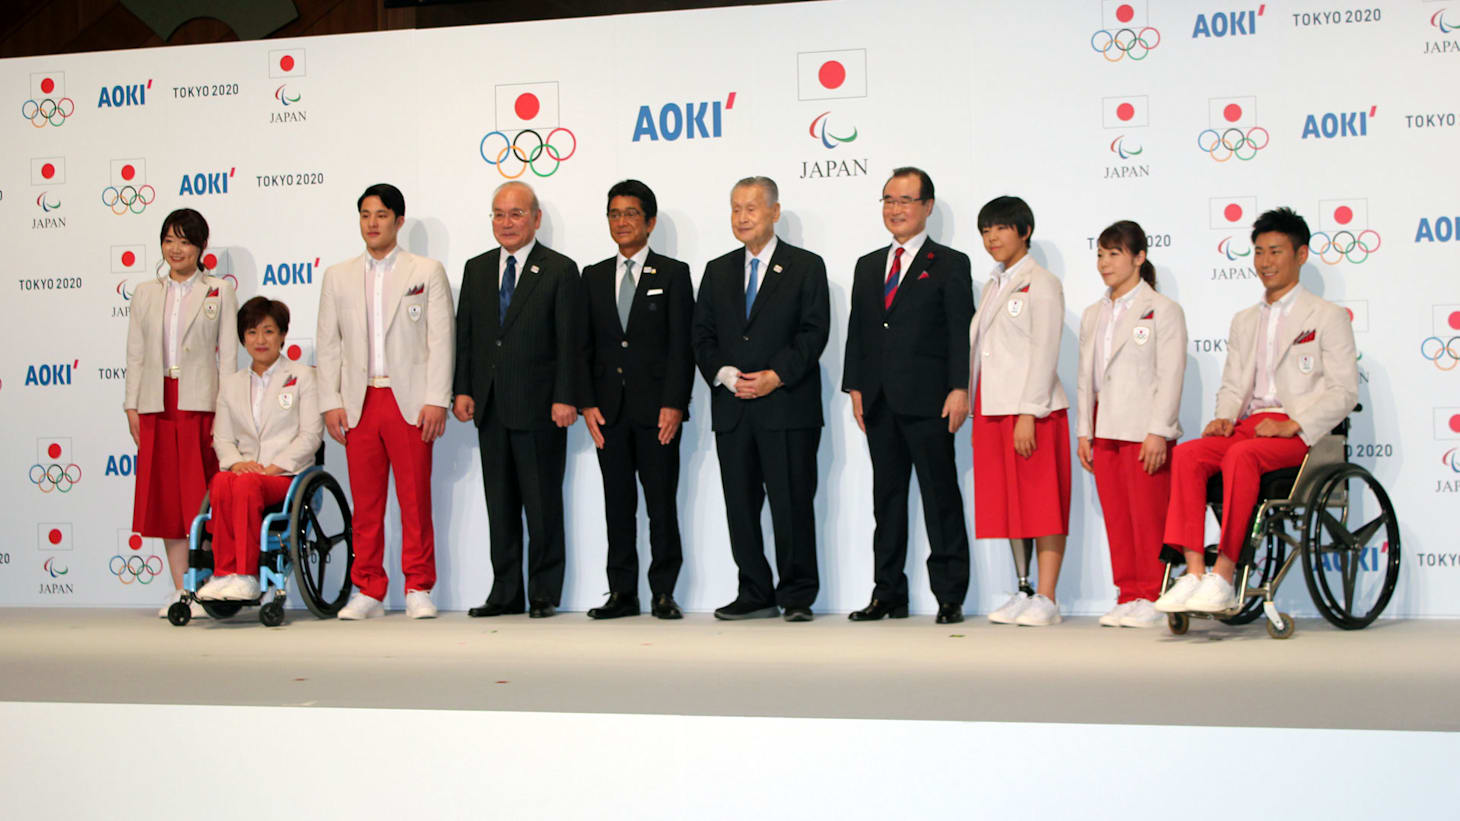 【東京五輪】日本代表選手団公式服装・テクニカルオフィシャル 